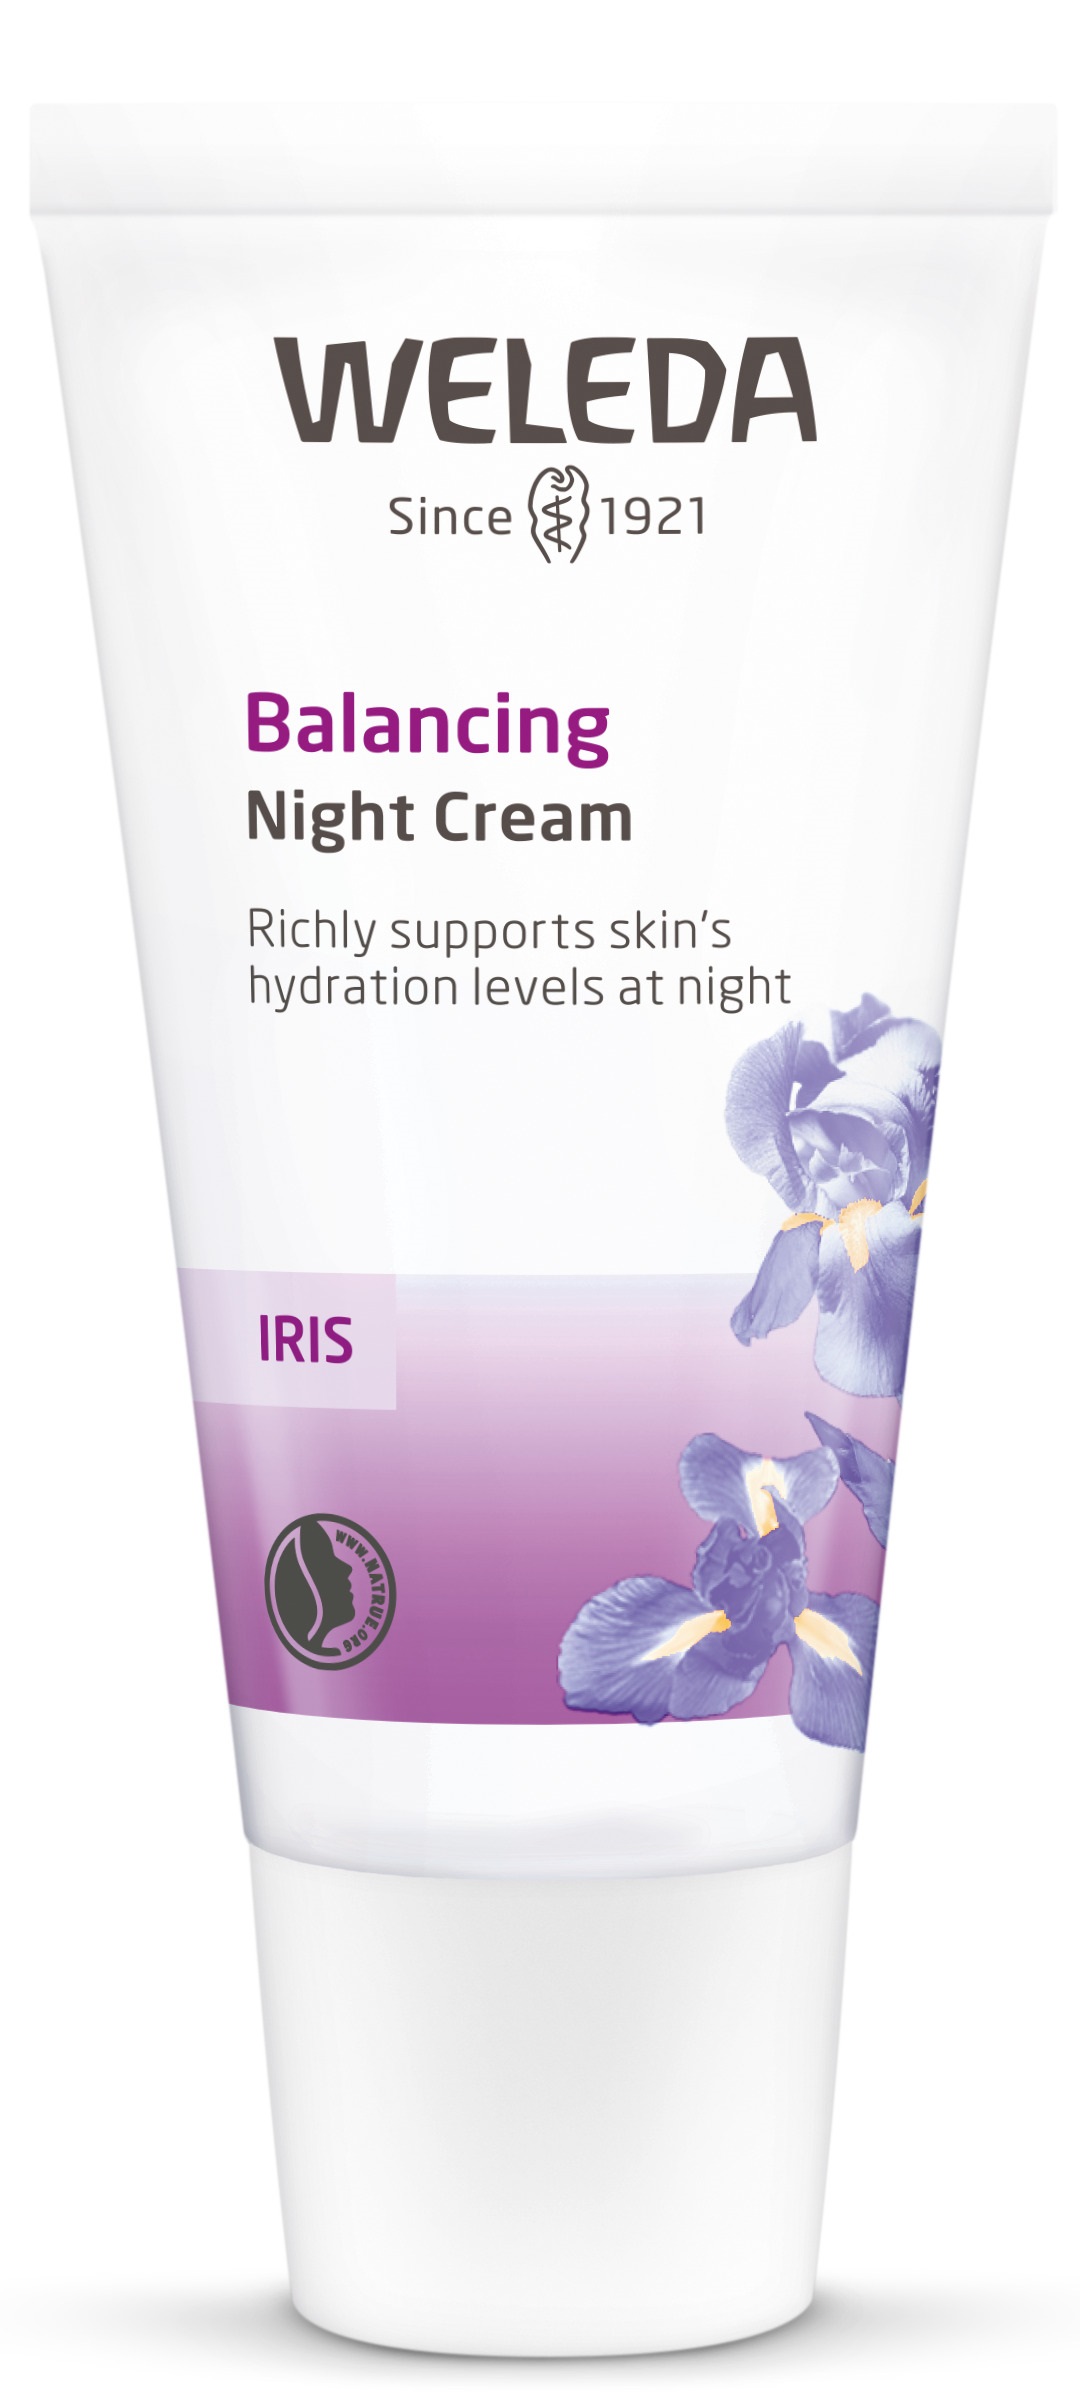 Weleda Iris Night Cream 30ml